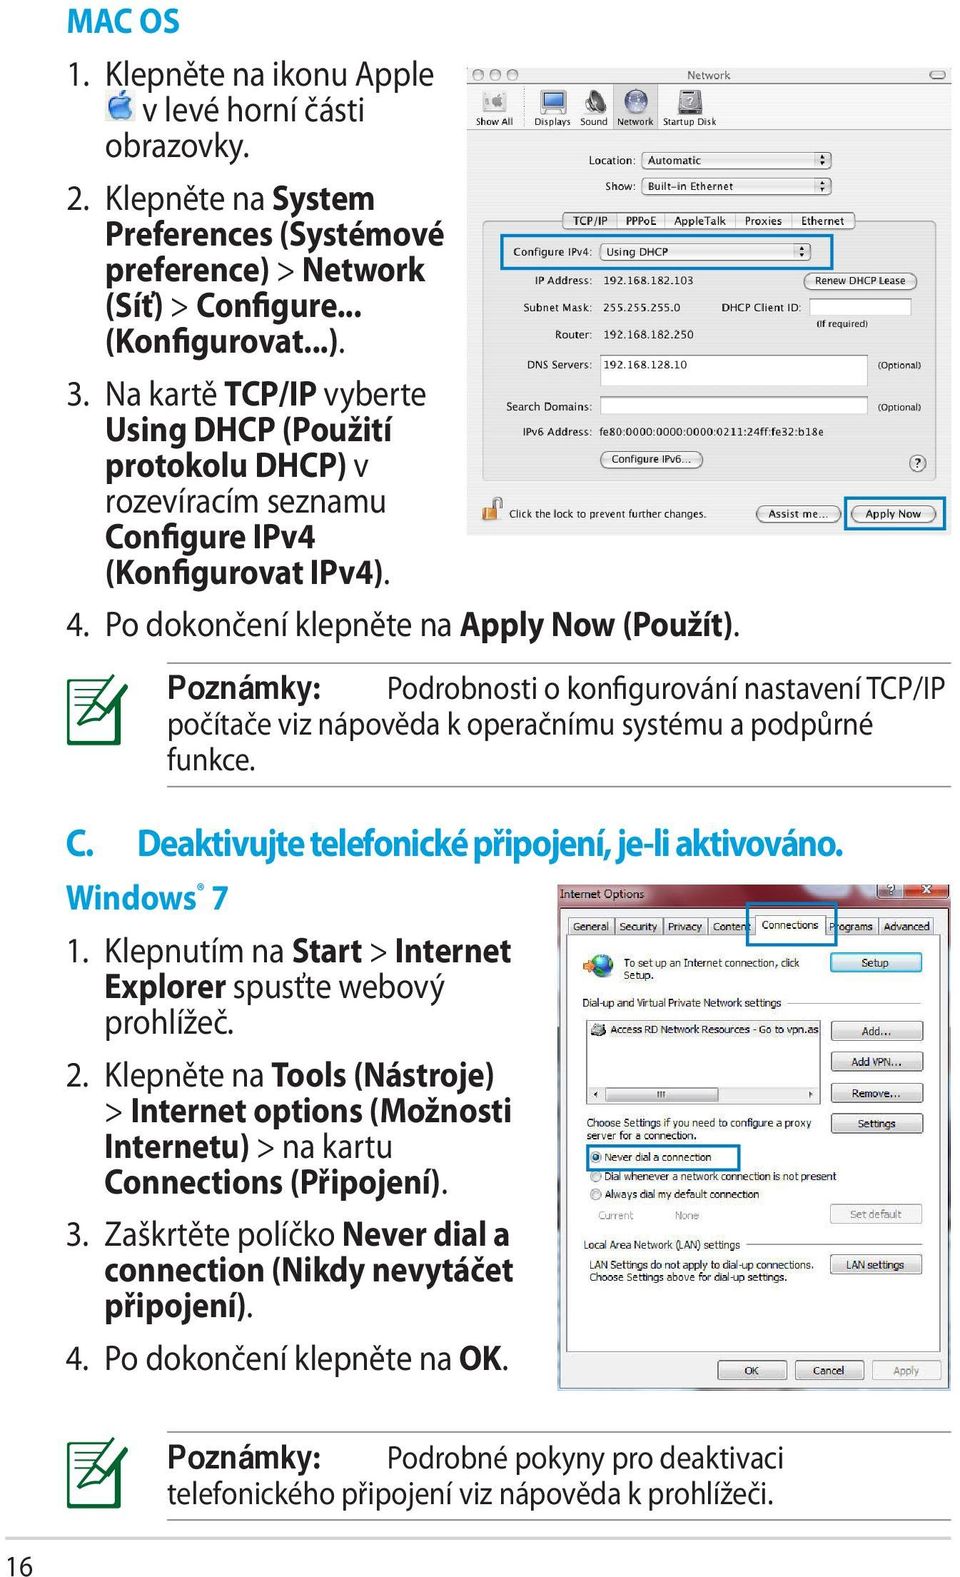 Windows 7 Poznámky: Podrobnosti o konfigurování nastavení TCP/IP počítače viz nápověda k operačnímu systému a podpůrné funkce. 1. Klepnutím na Start > Internet Explorer spusťte webový prohlížeč. 2.